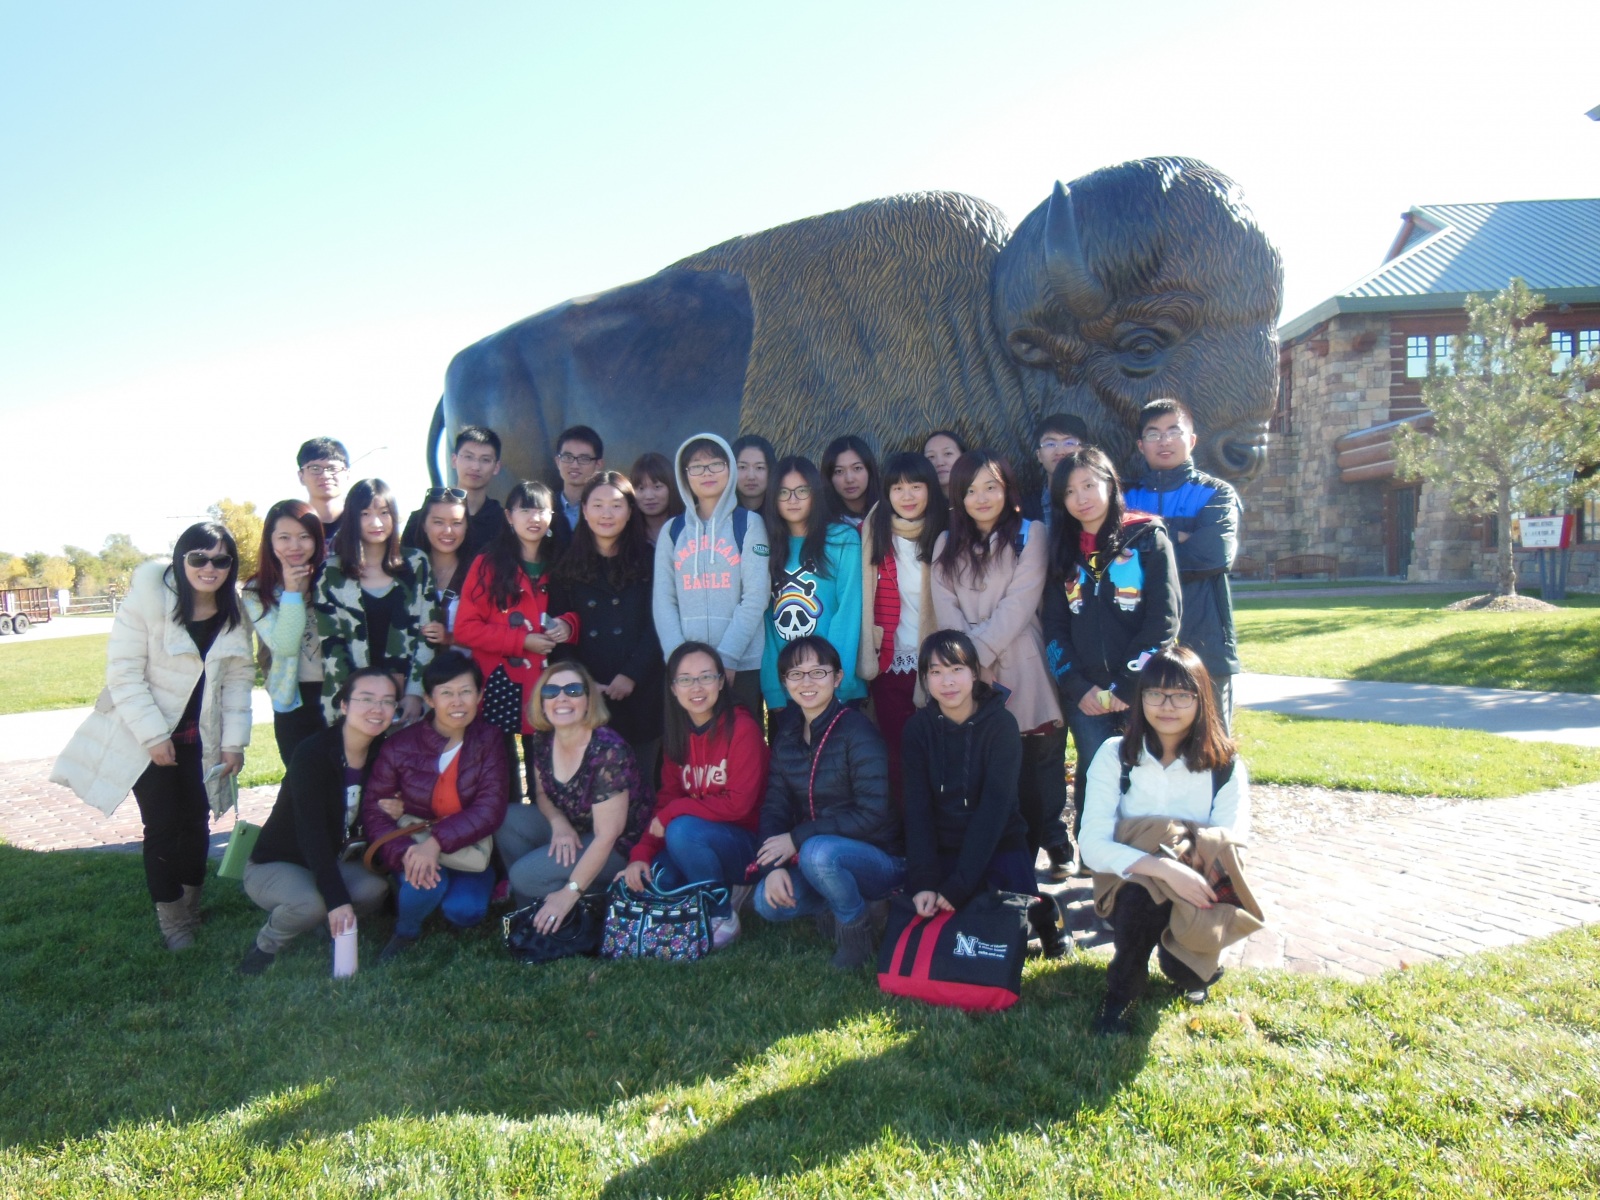 Students visit buffalo statue